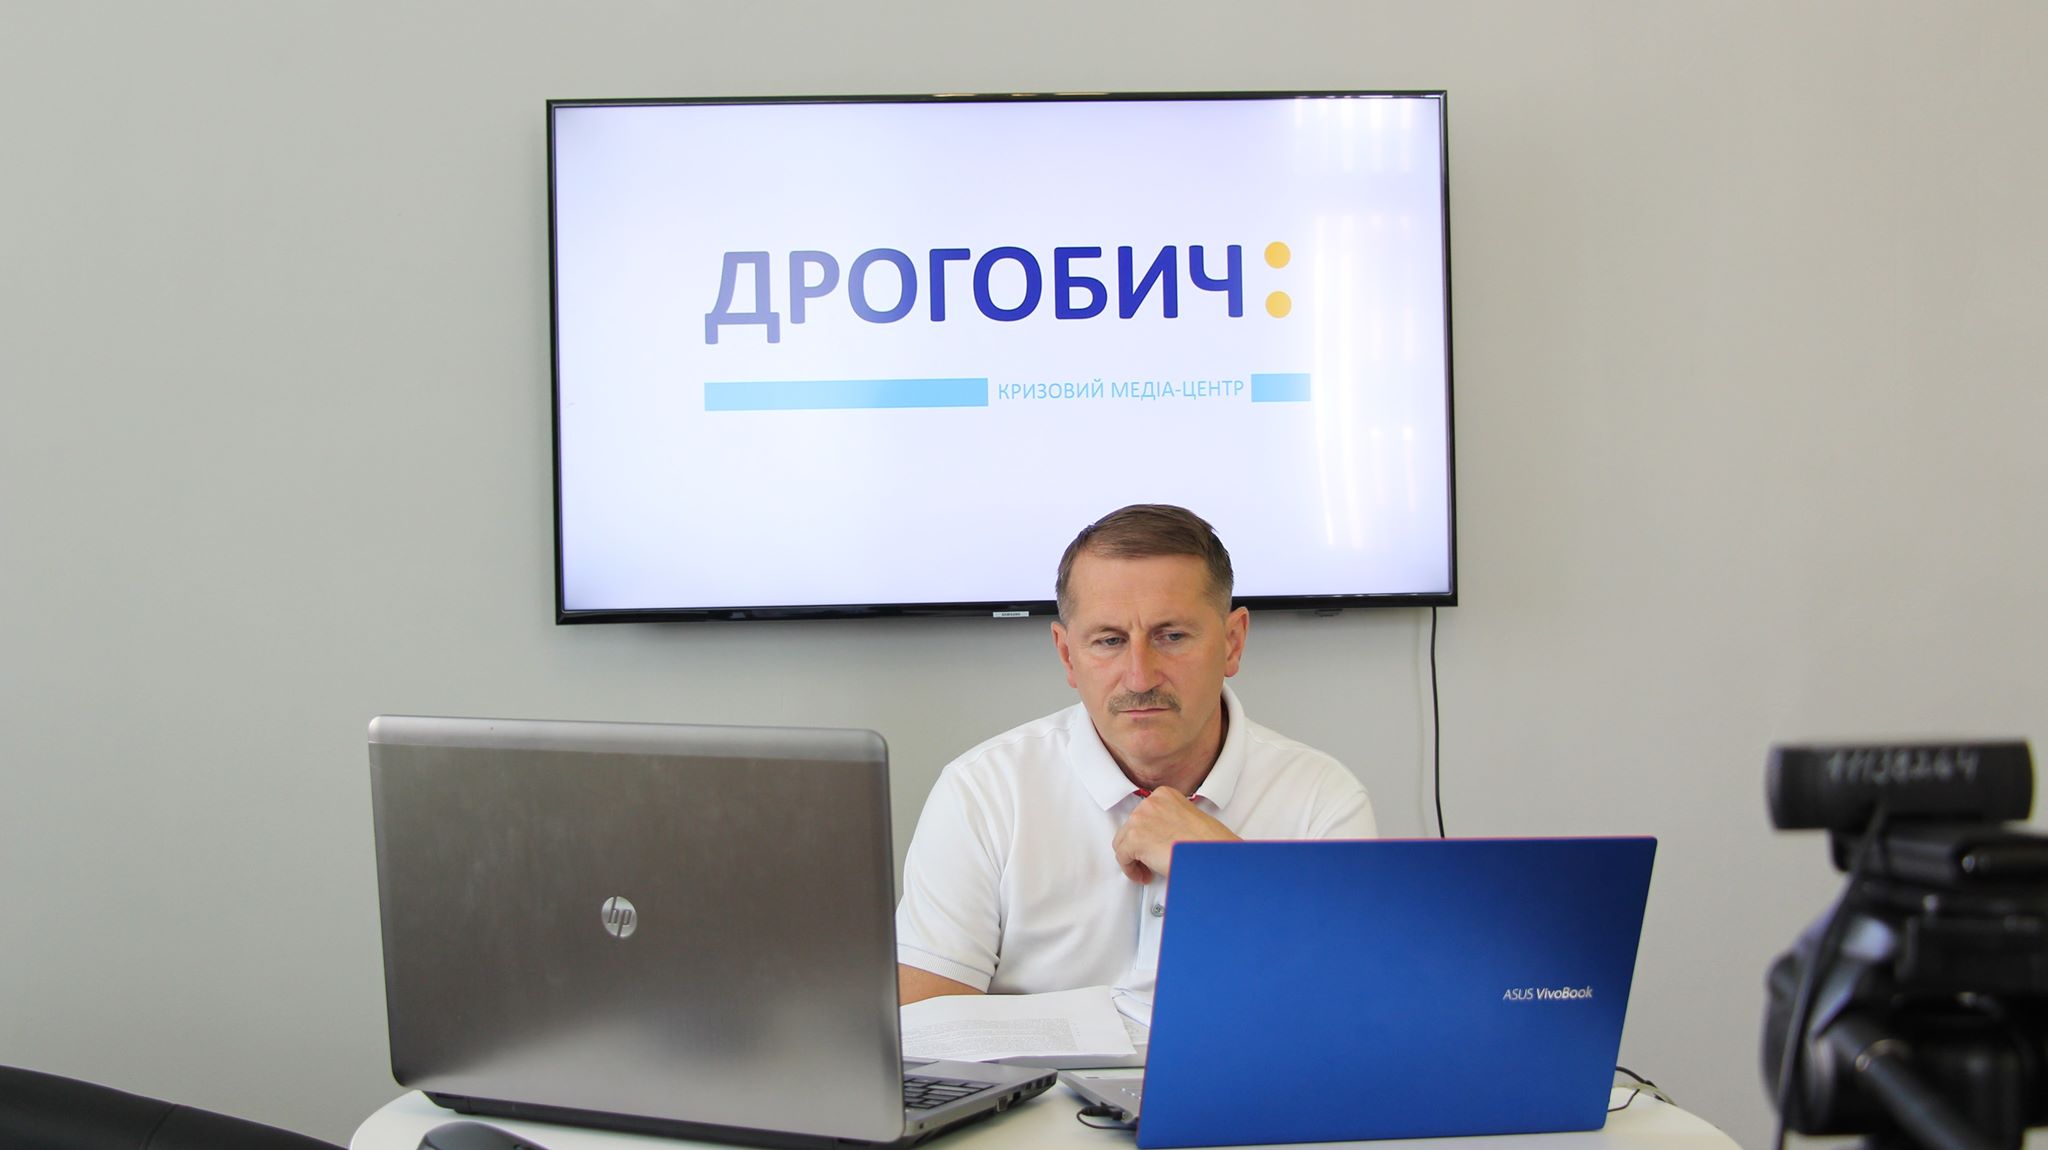 Україна напередодні місцевих виборів: Позиція міського голови Дрогобича Тараса Кучми